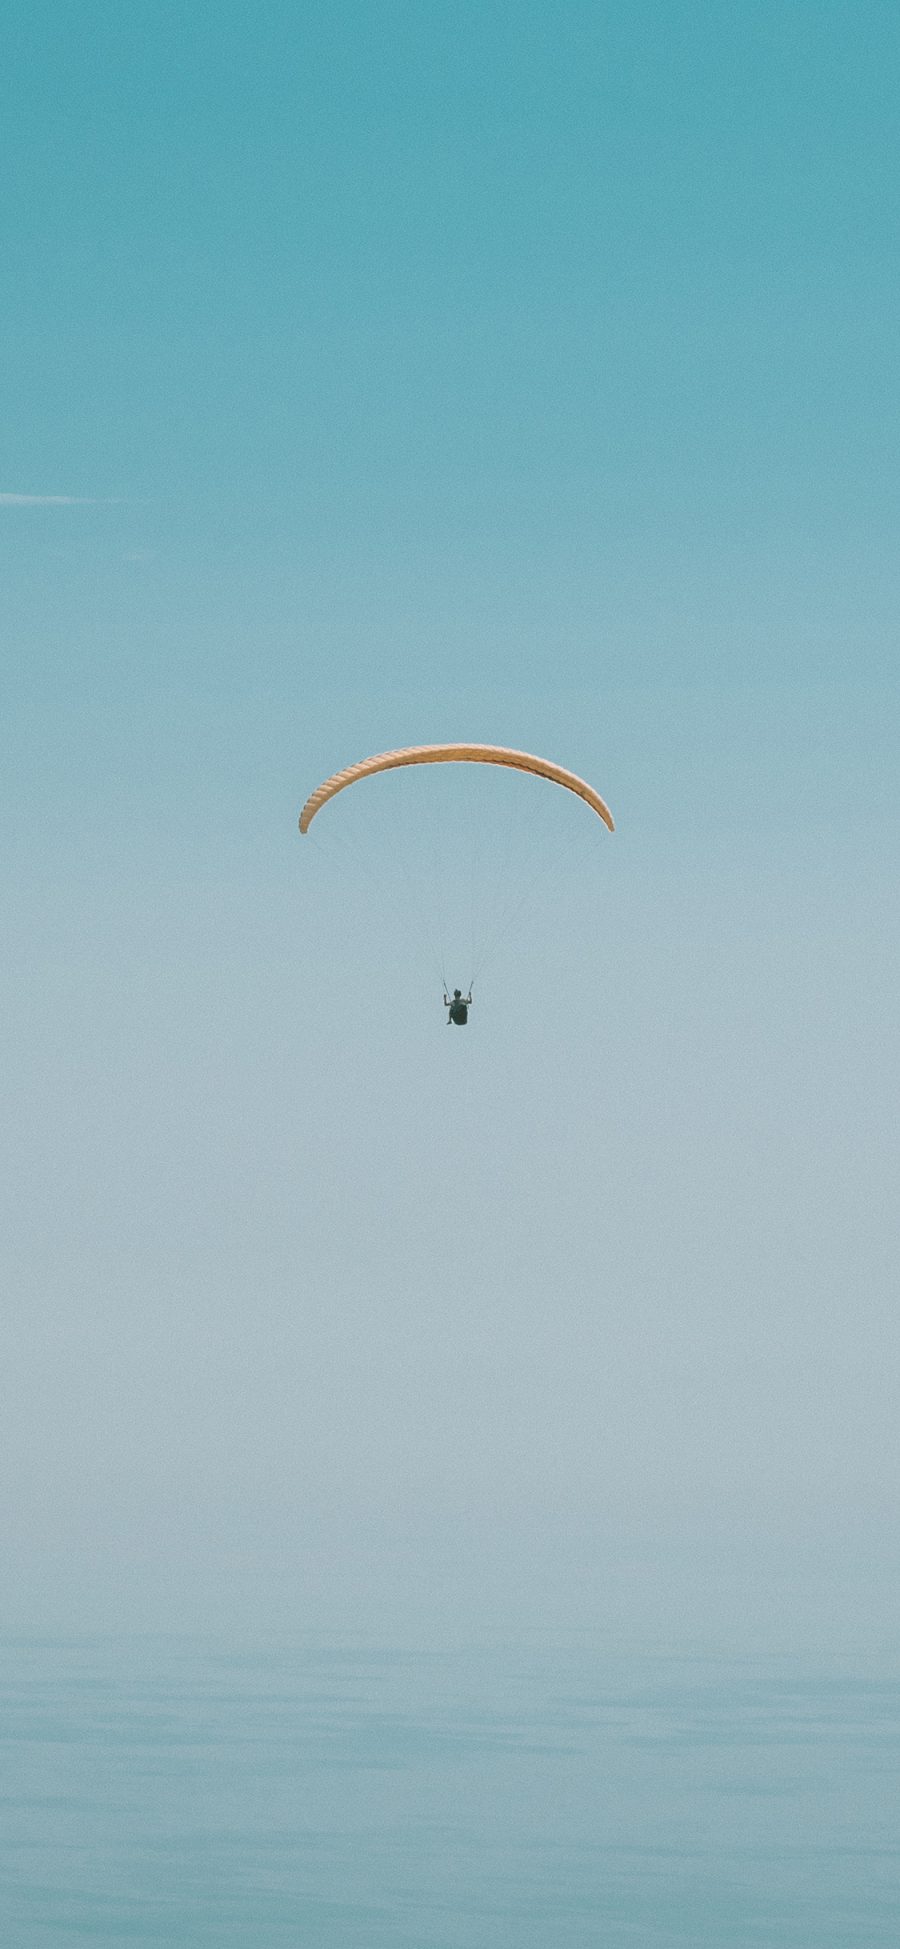 [2436×1125]跳伞 风景 天空  降落 苹果手机壁纸图片